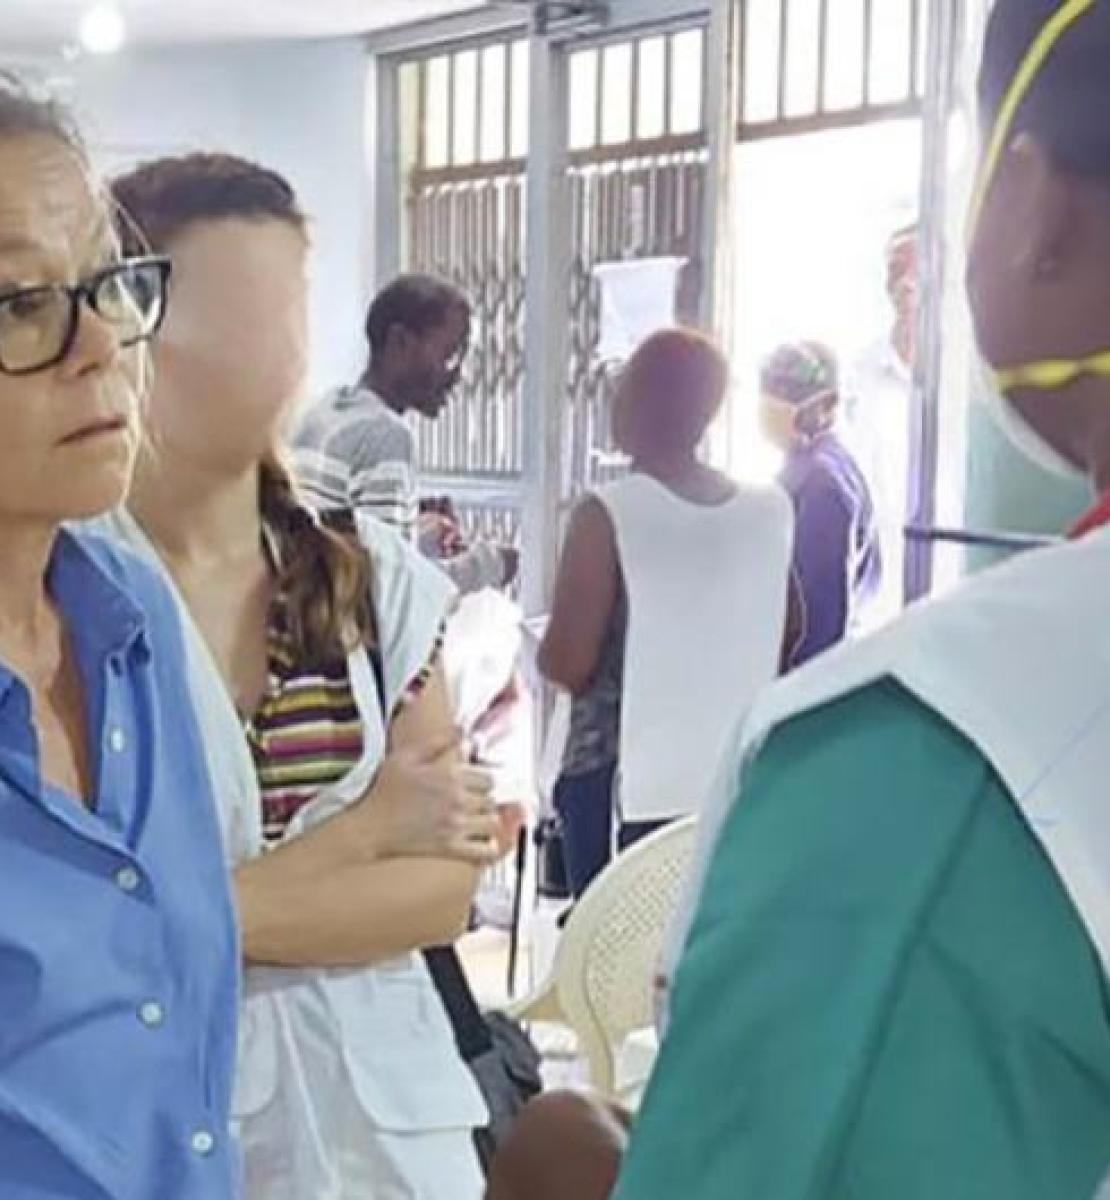 Dans l’enceinte d’un hôpital à Haïti, une femme vêtue d'un chemisier bleu et portant des lunettes discute avec une soignante photographiée de dos, portant une blouse blanche et un masque de protection respiratoire. Les deux femmes sont entourées de plusieurs autres personnes 